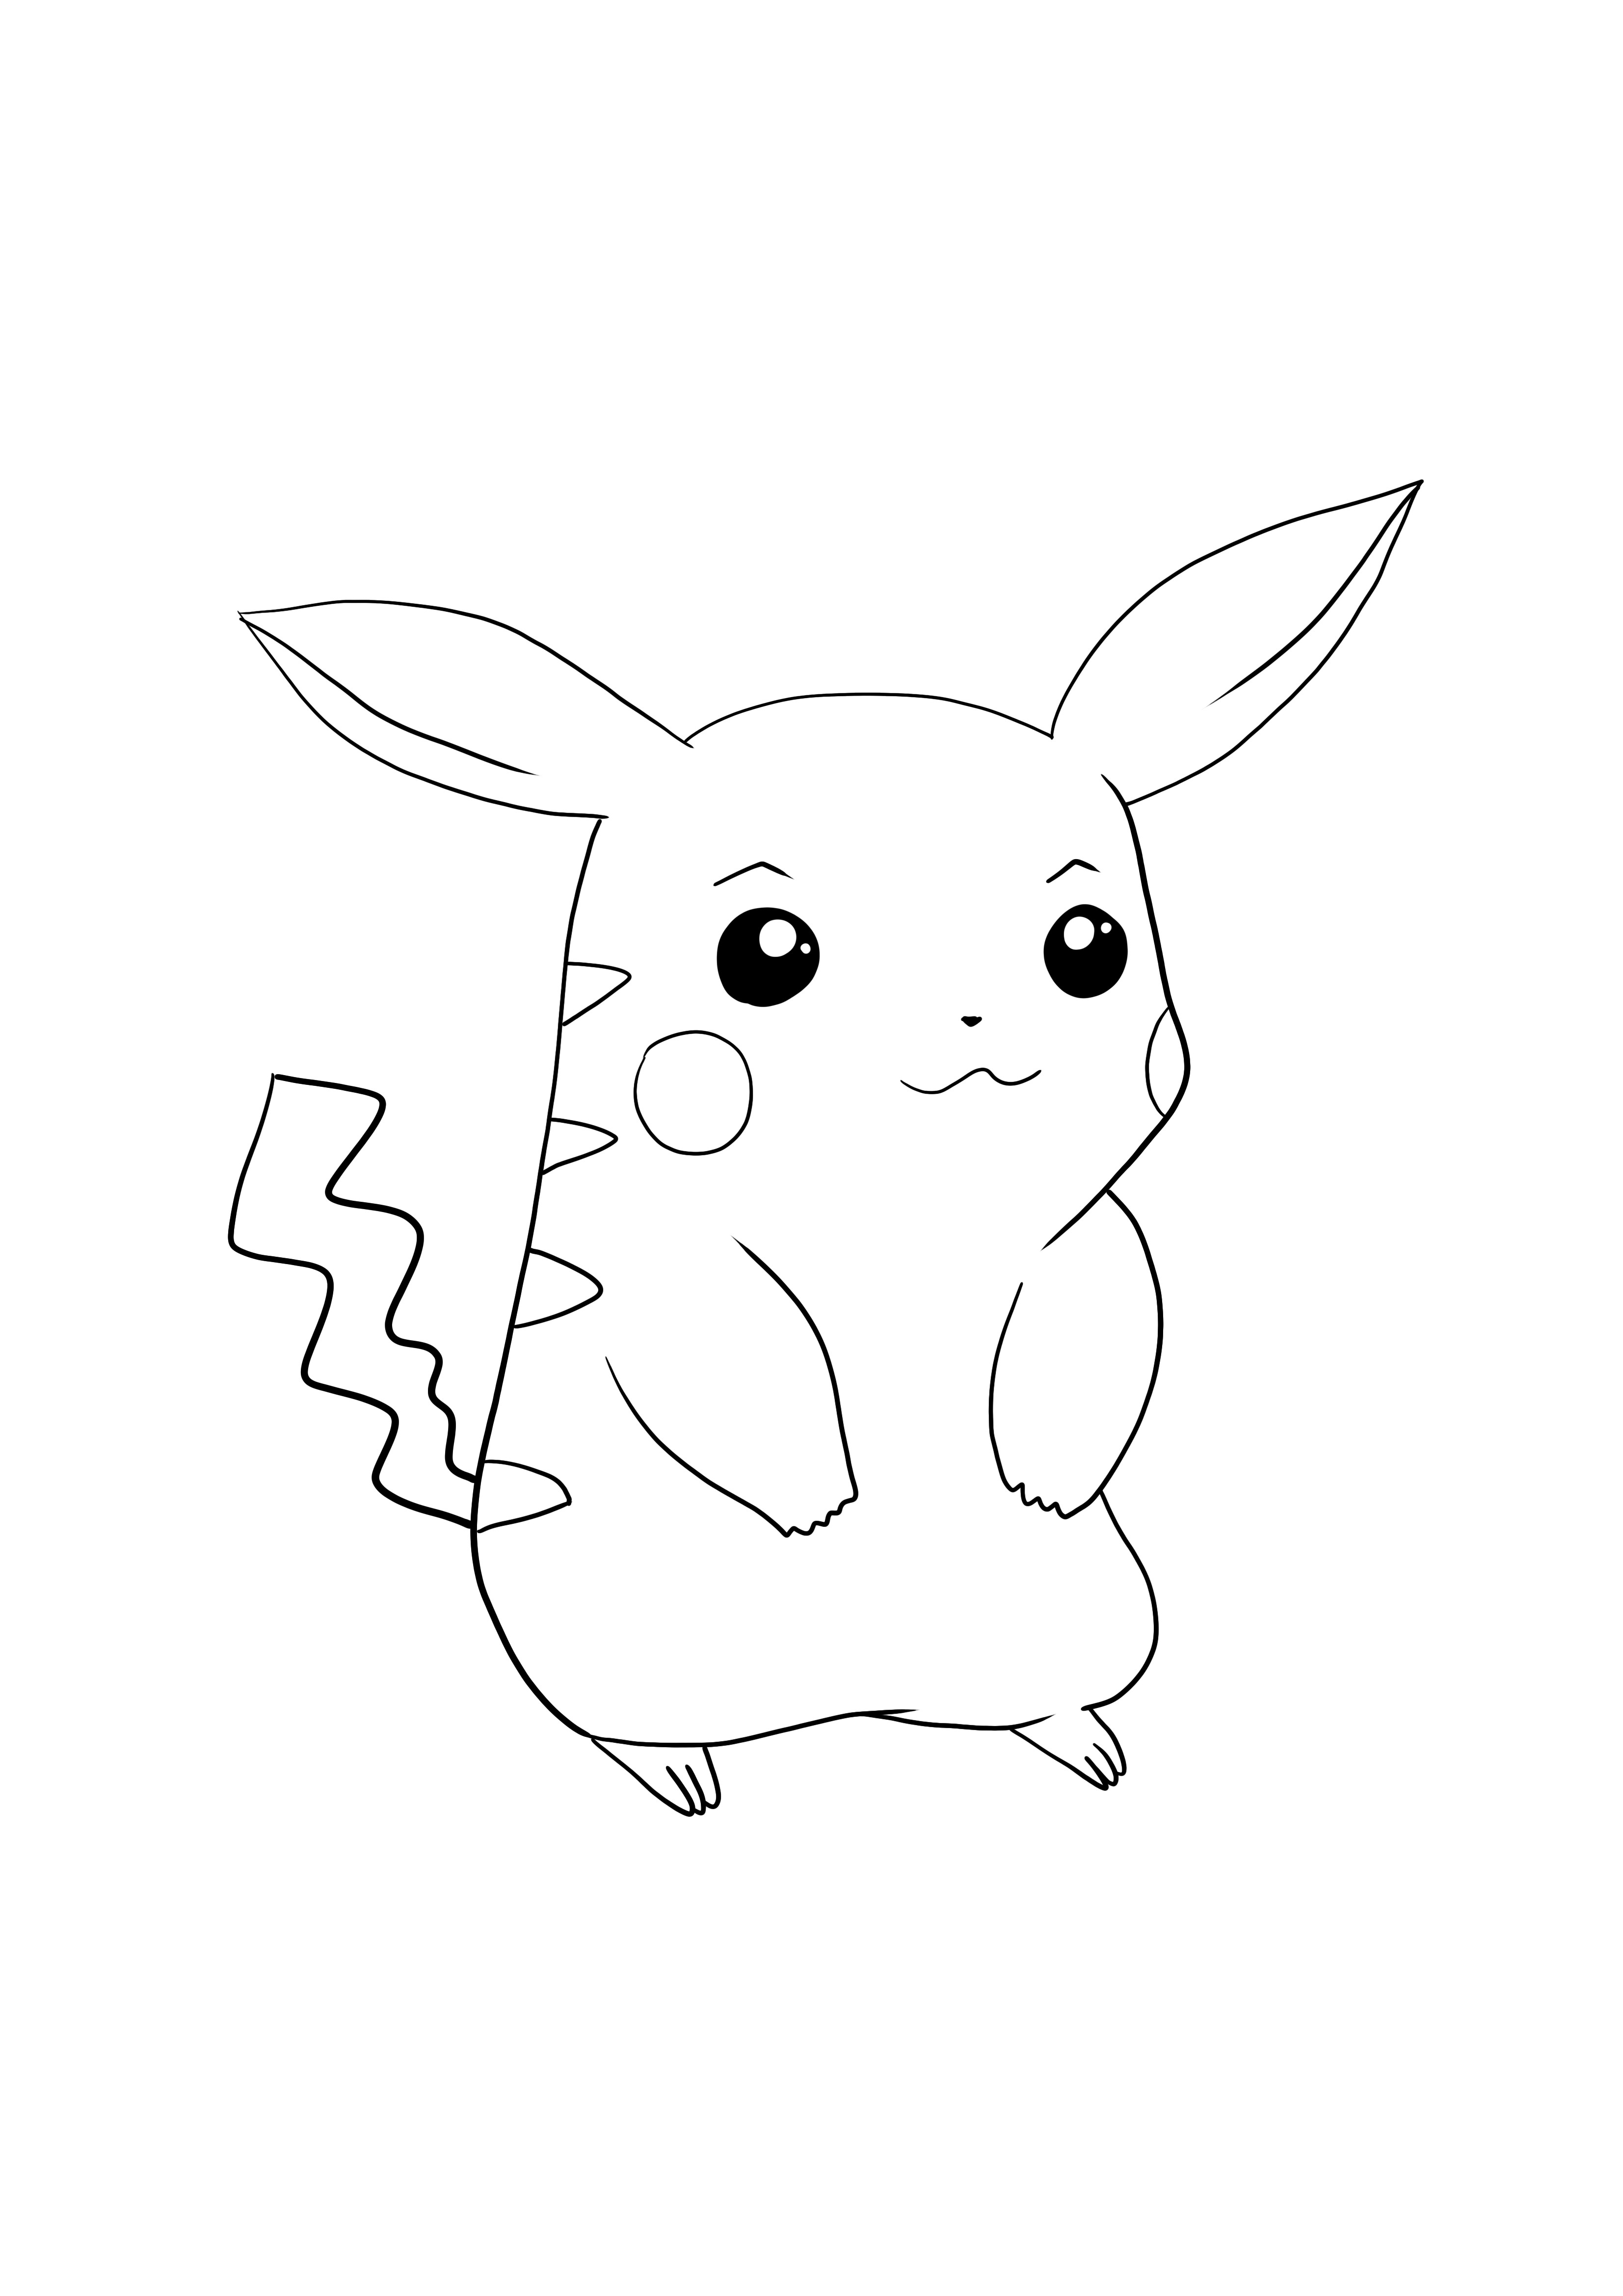 Pikachu-Pokémon go letöltése és színezése ingyenes oldal